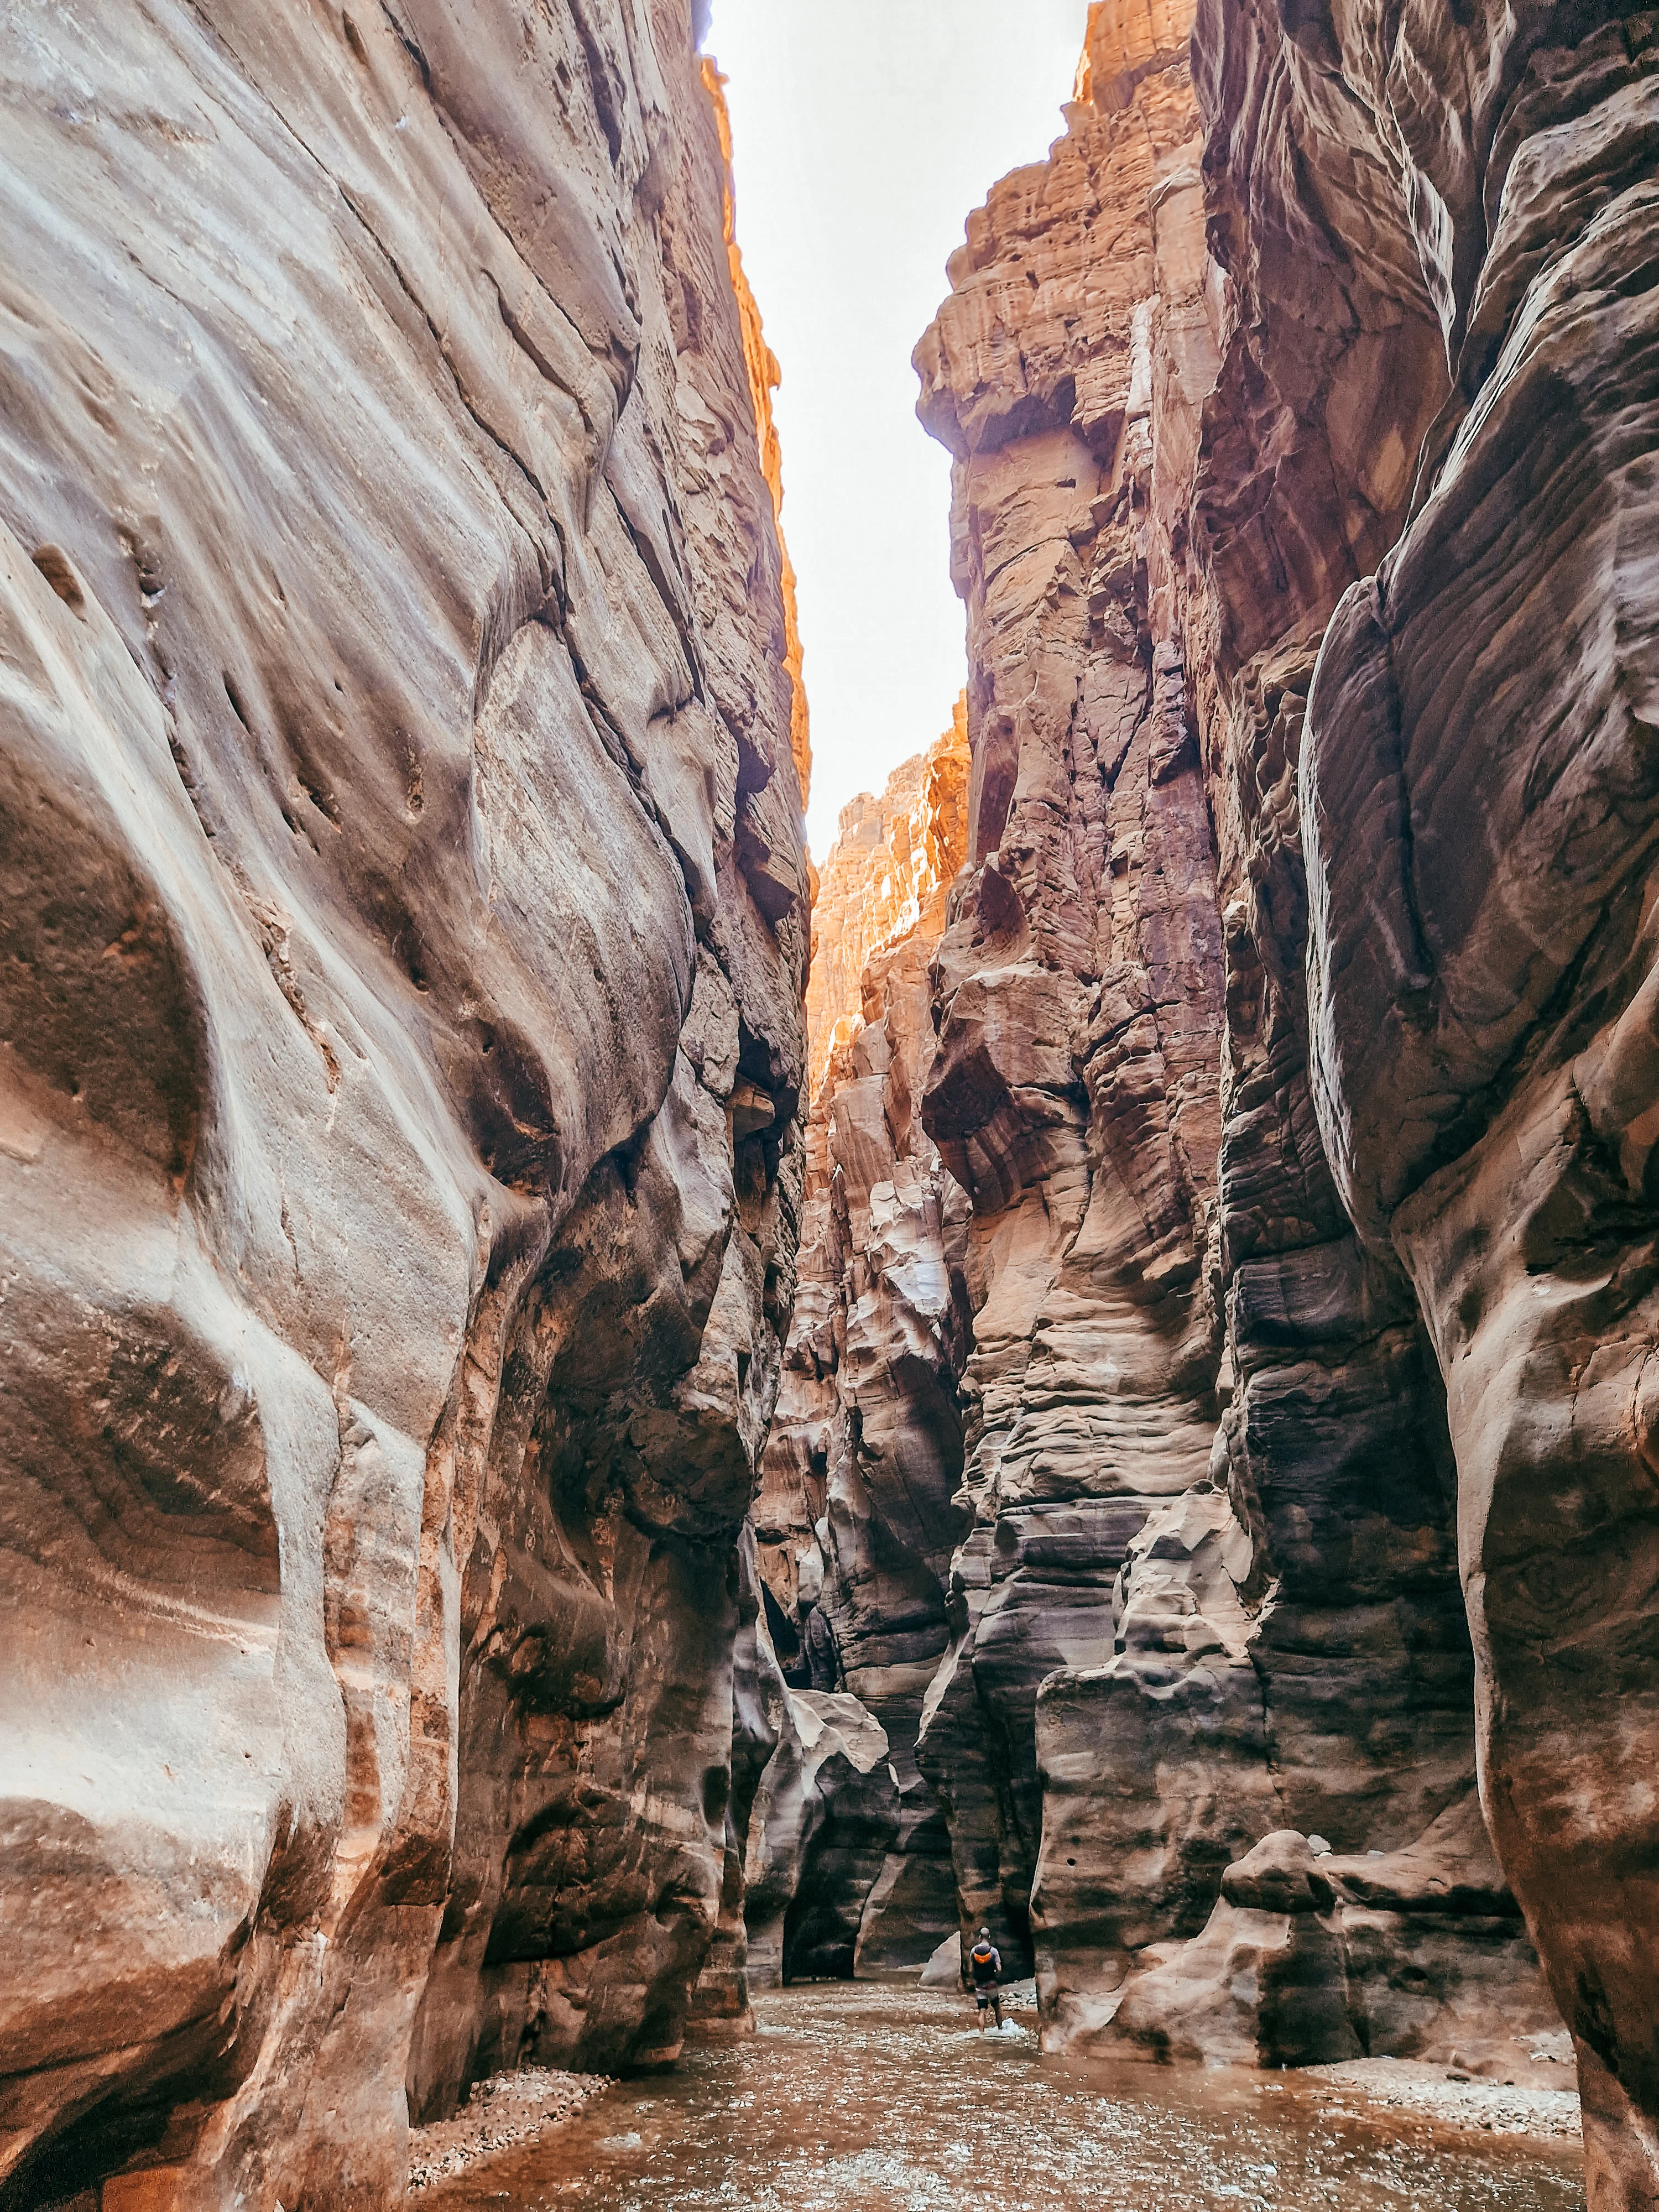 Spectacular canyon of Wadi Mujib, Jordan